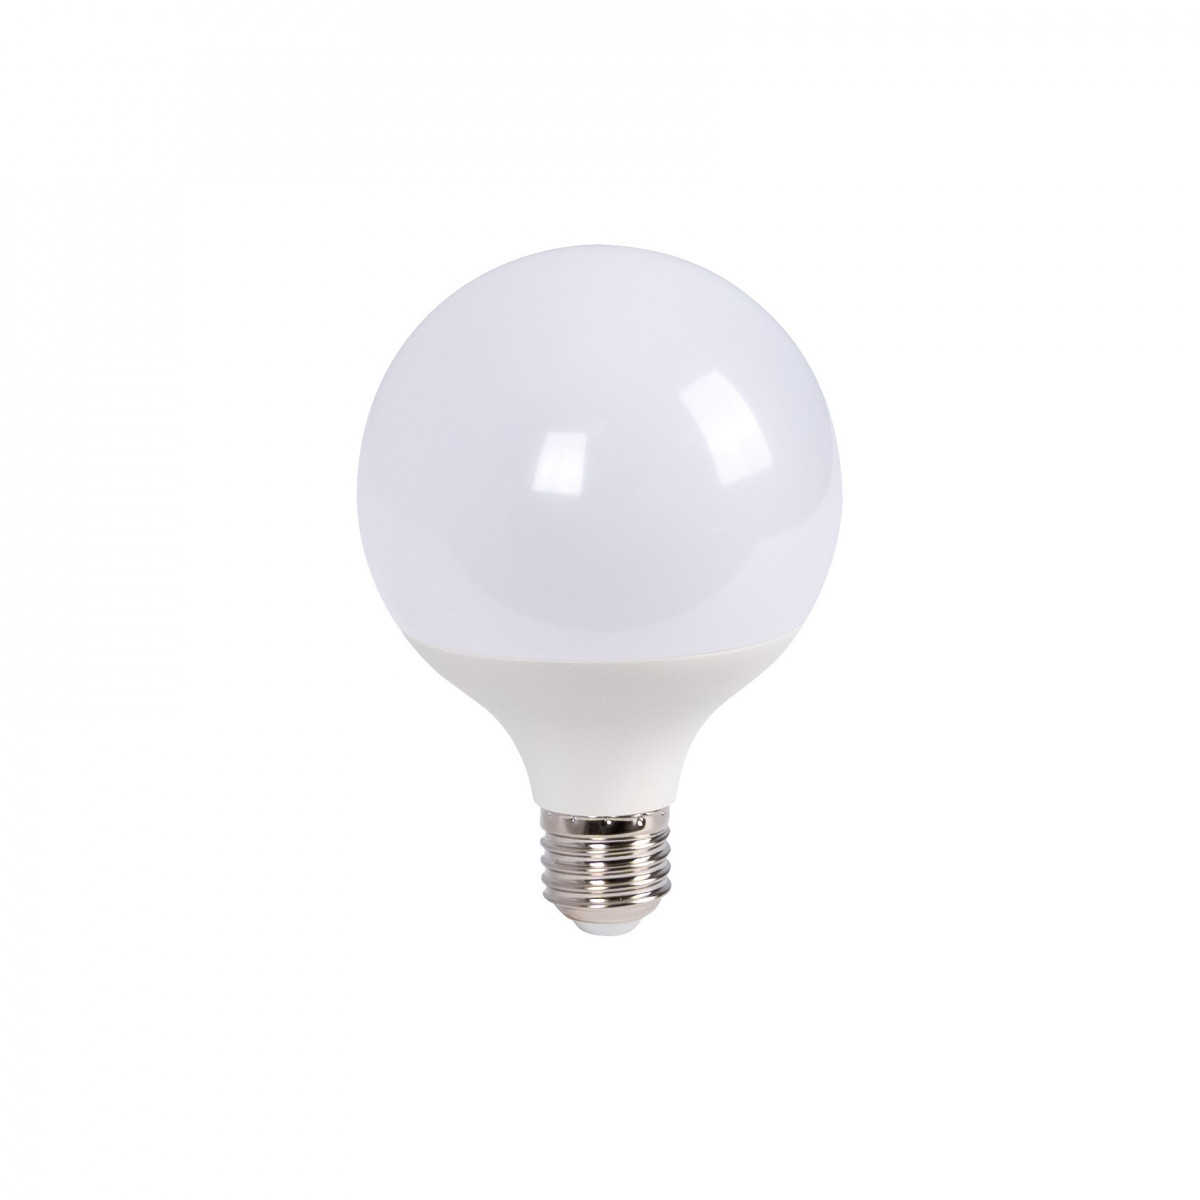 Decorative LED globe light bulb - E27 G95 - 15W